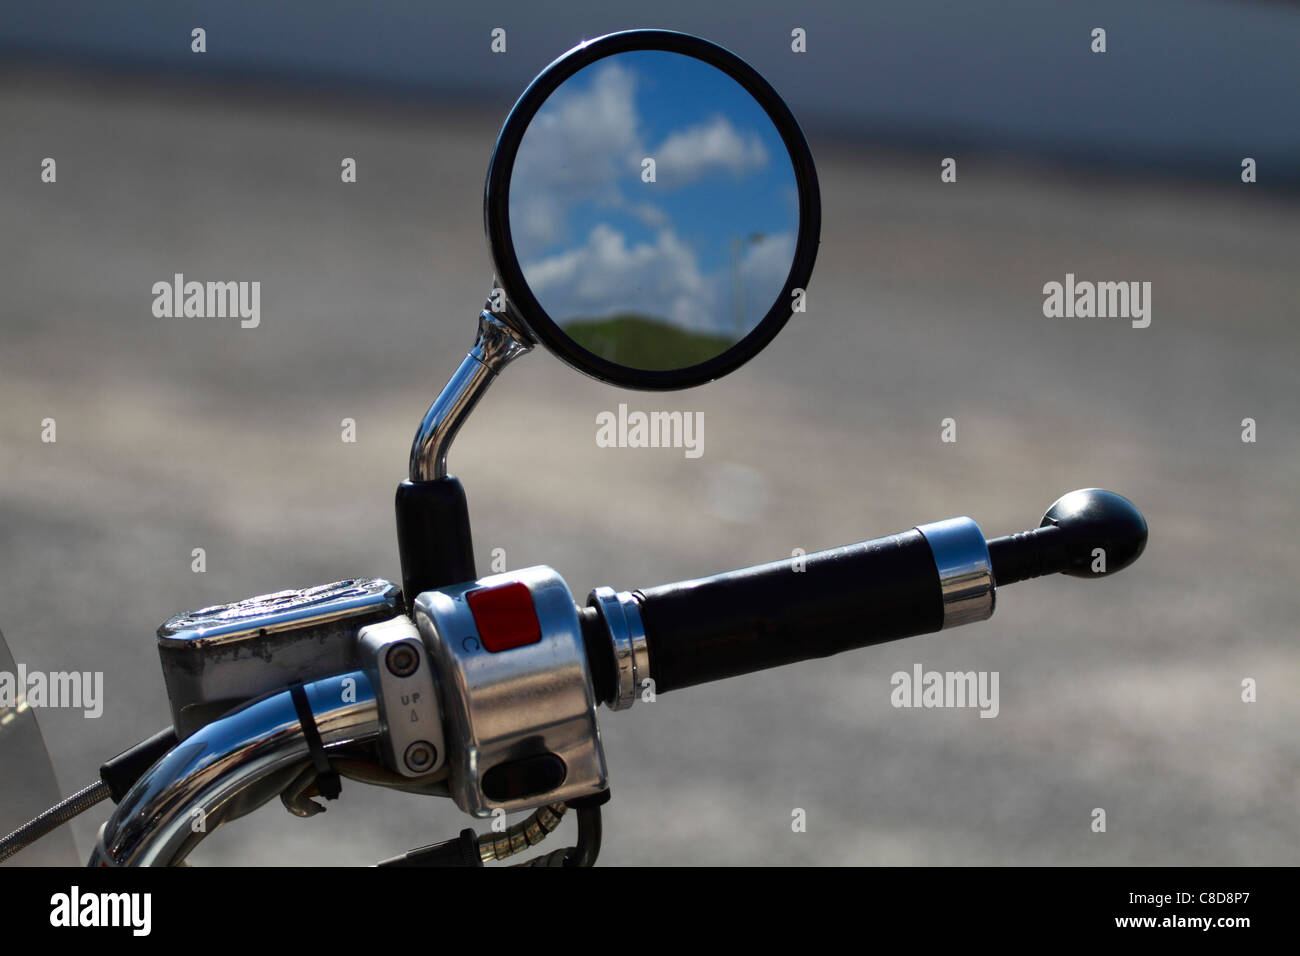 Custom bike, mirror detail Stock Photo